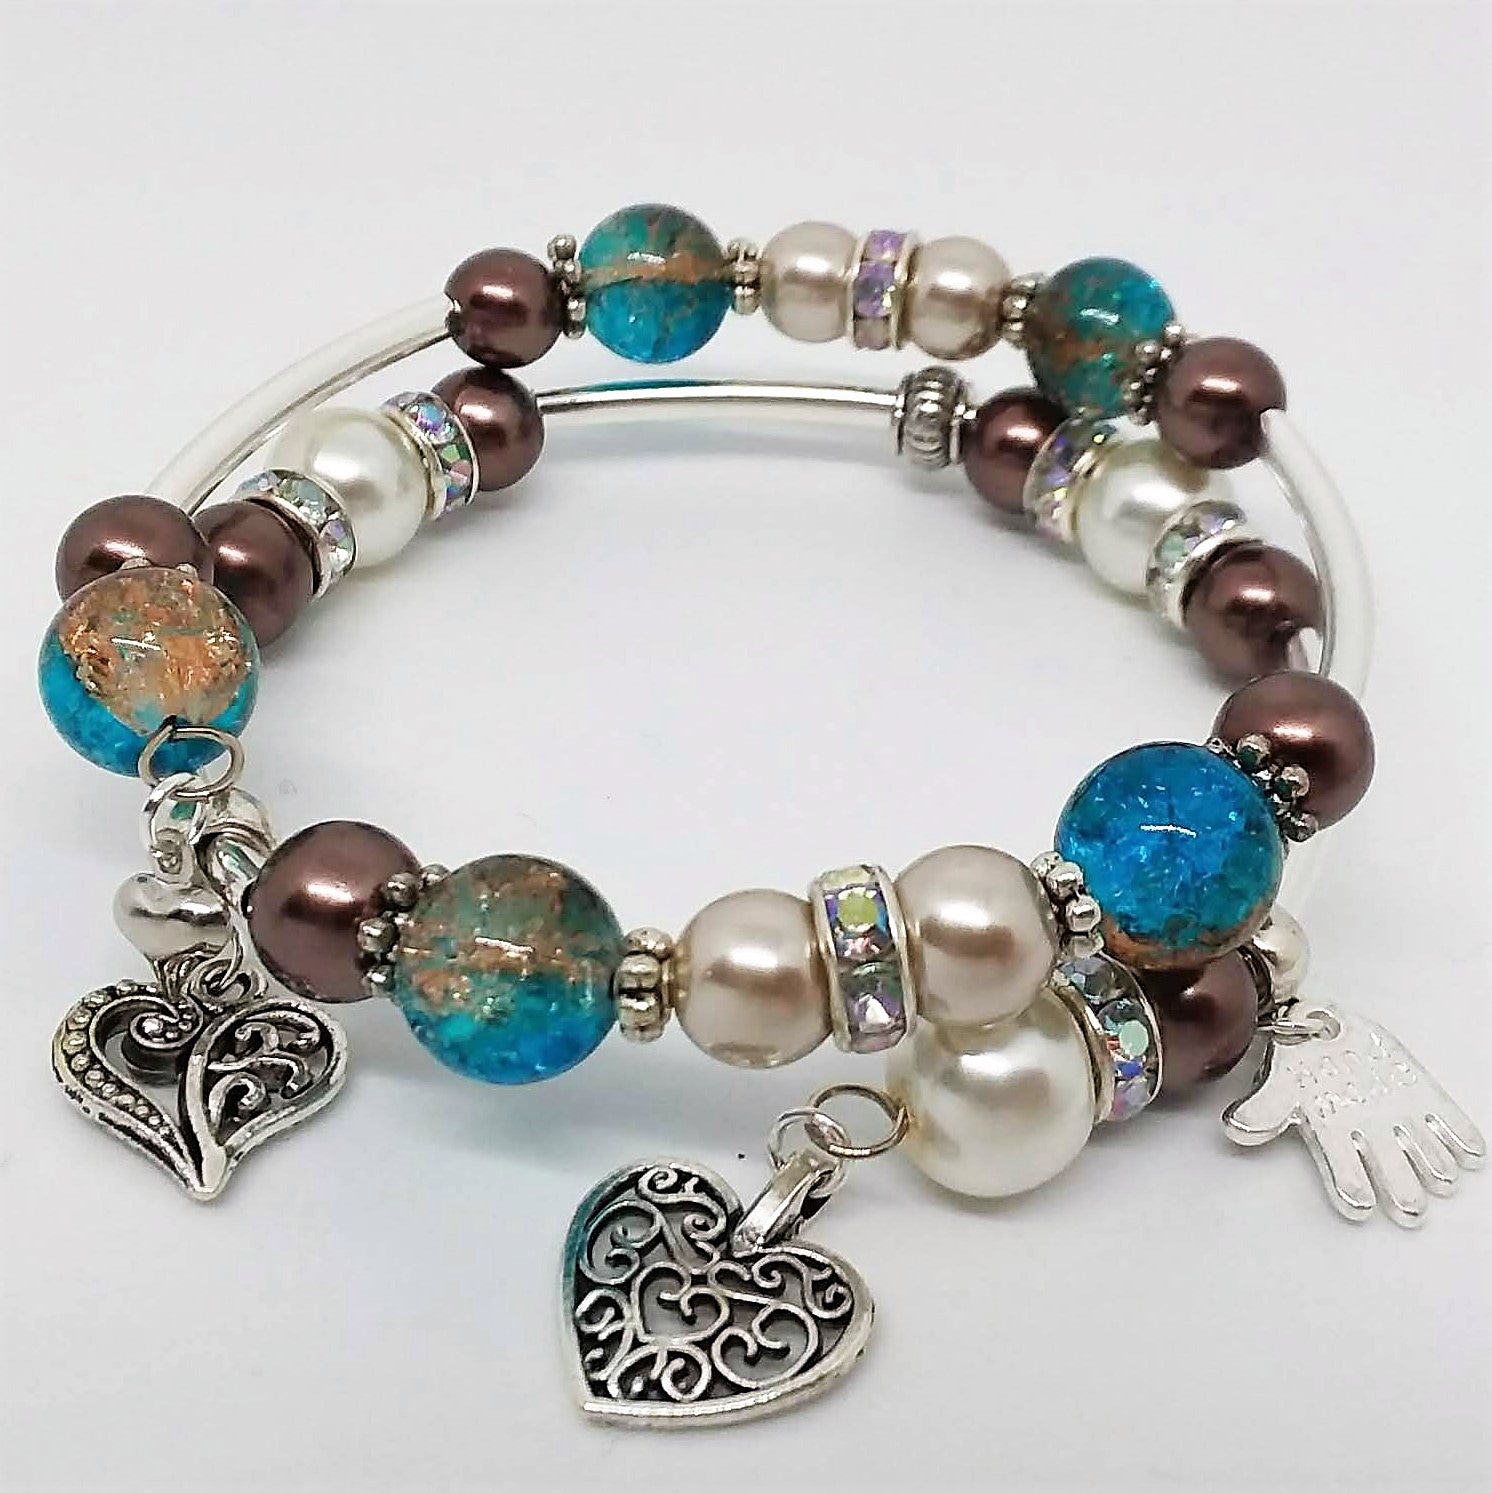 Metal Bracelets For Women on Sale - www.illva.com 1693406450